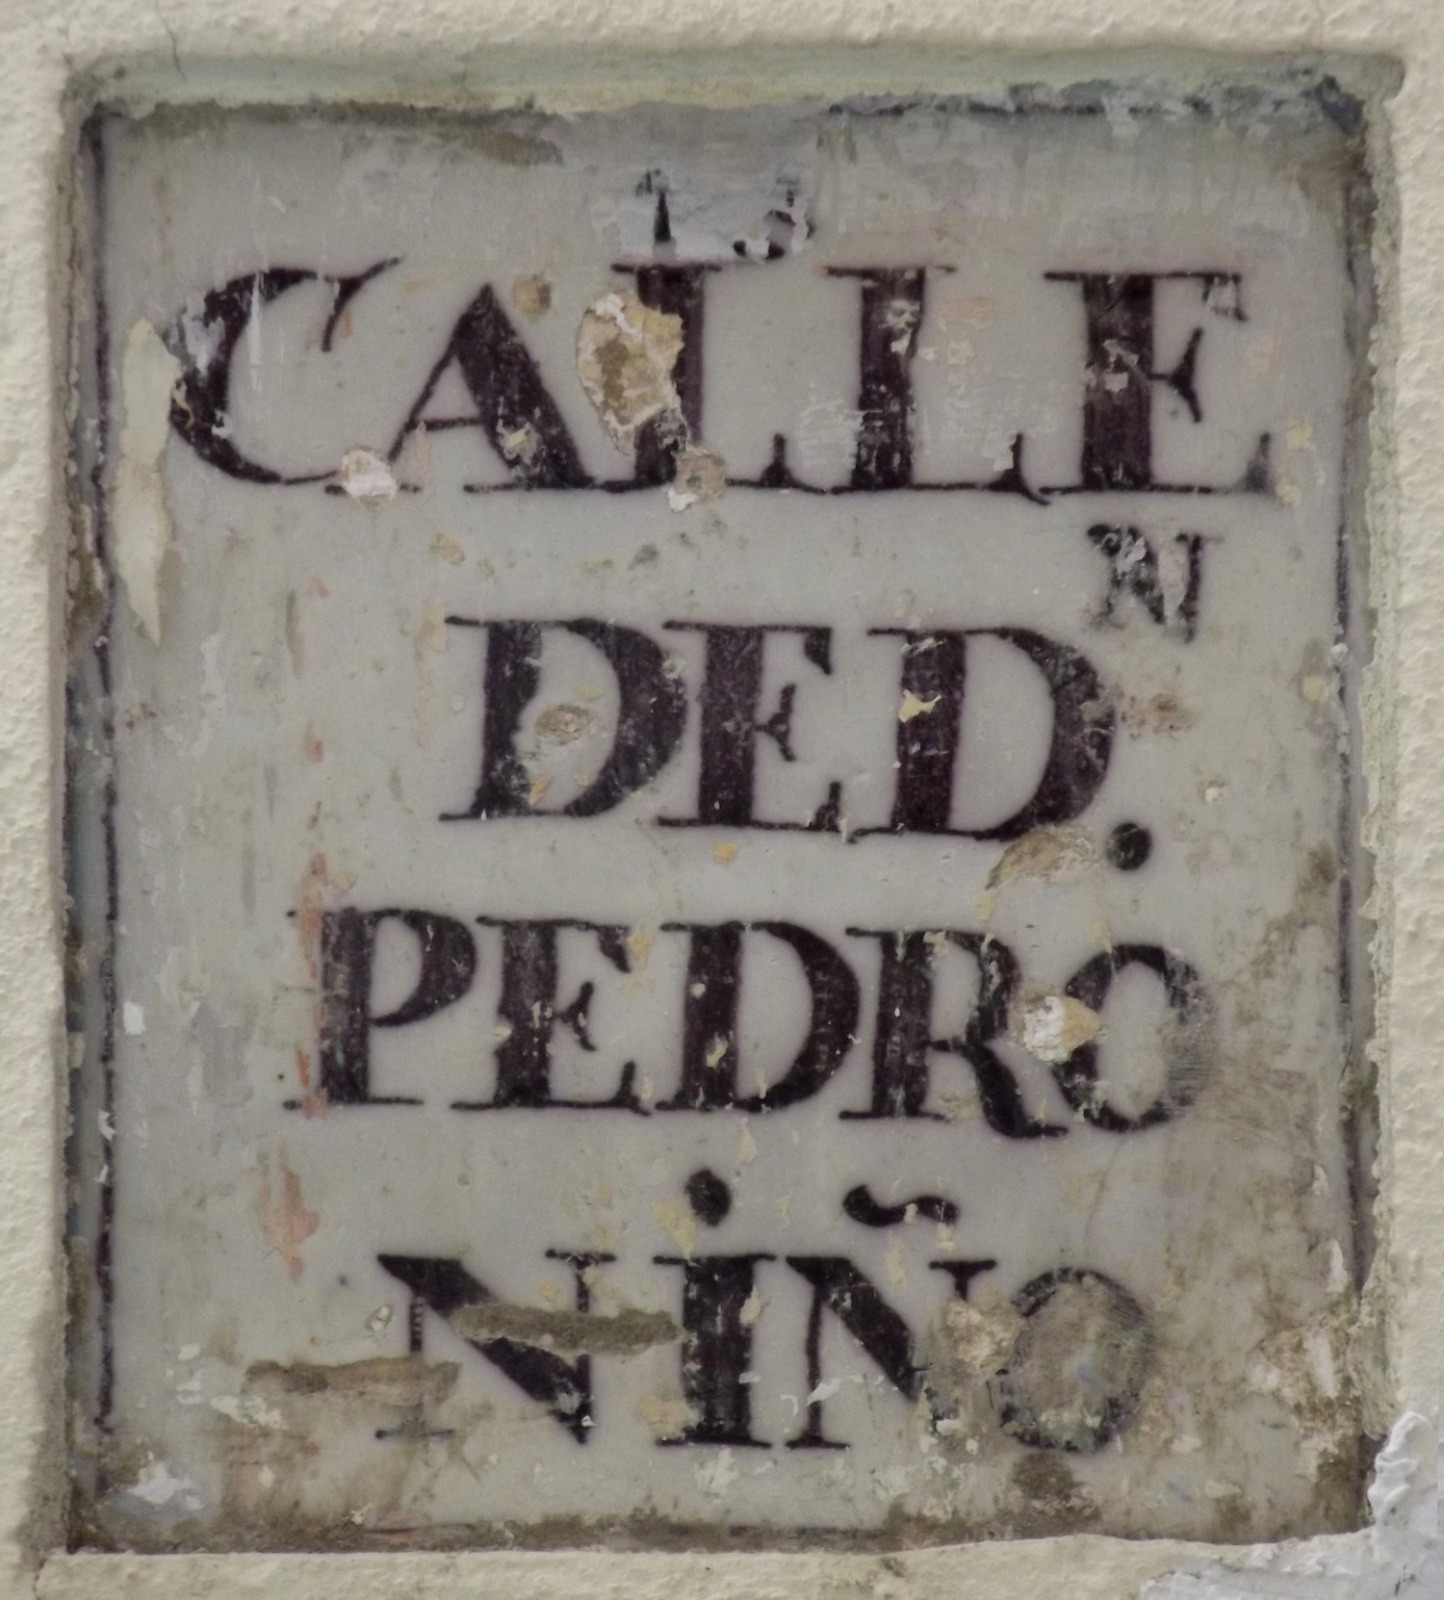 00361. Placa de Olavide. Nomenclátor. Calle Don Pedro Niño. Sevilla.